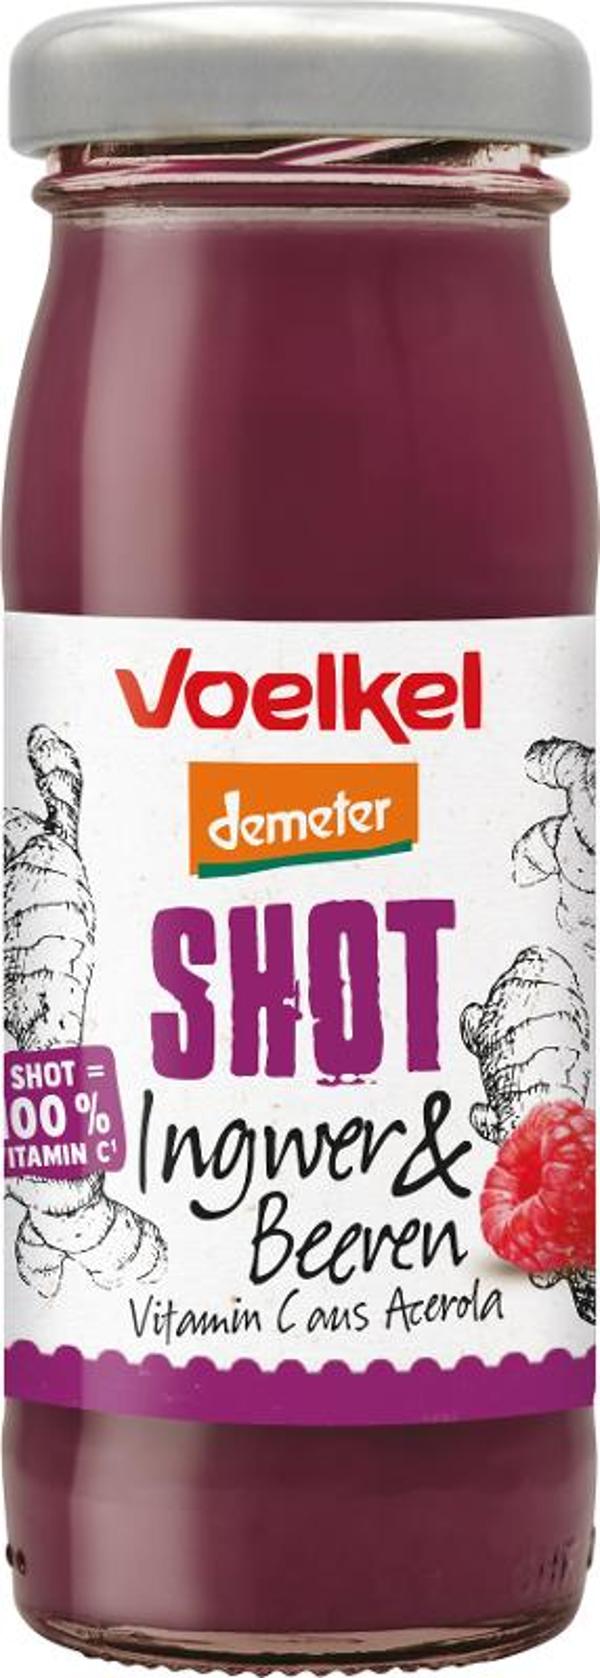 Produktfoto zu VPE Shot Ingwer & Beere 8x95ml Voelkel